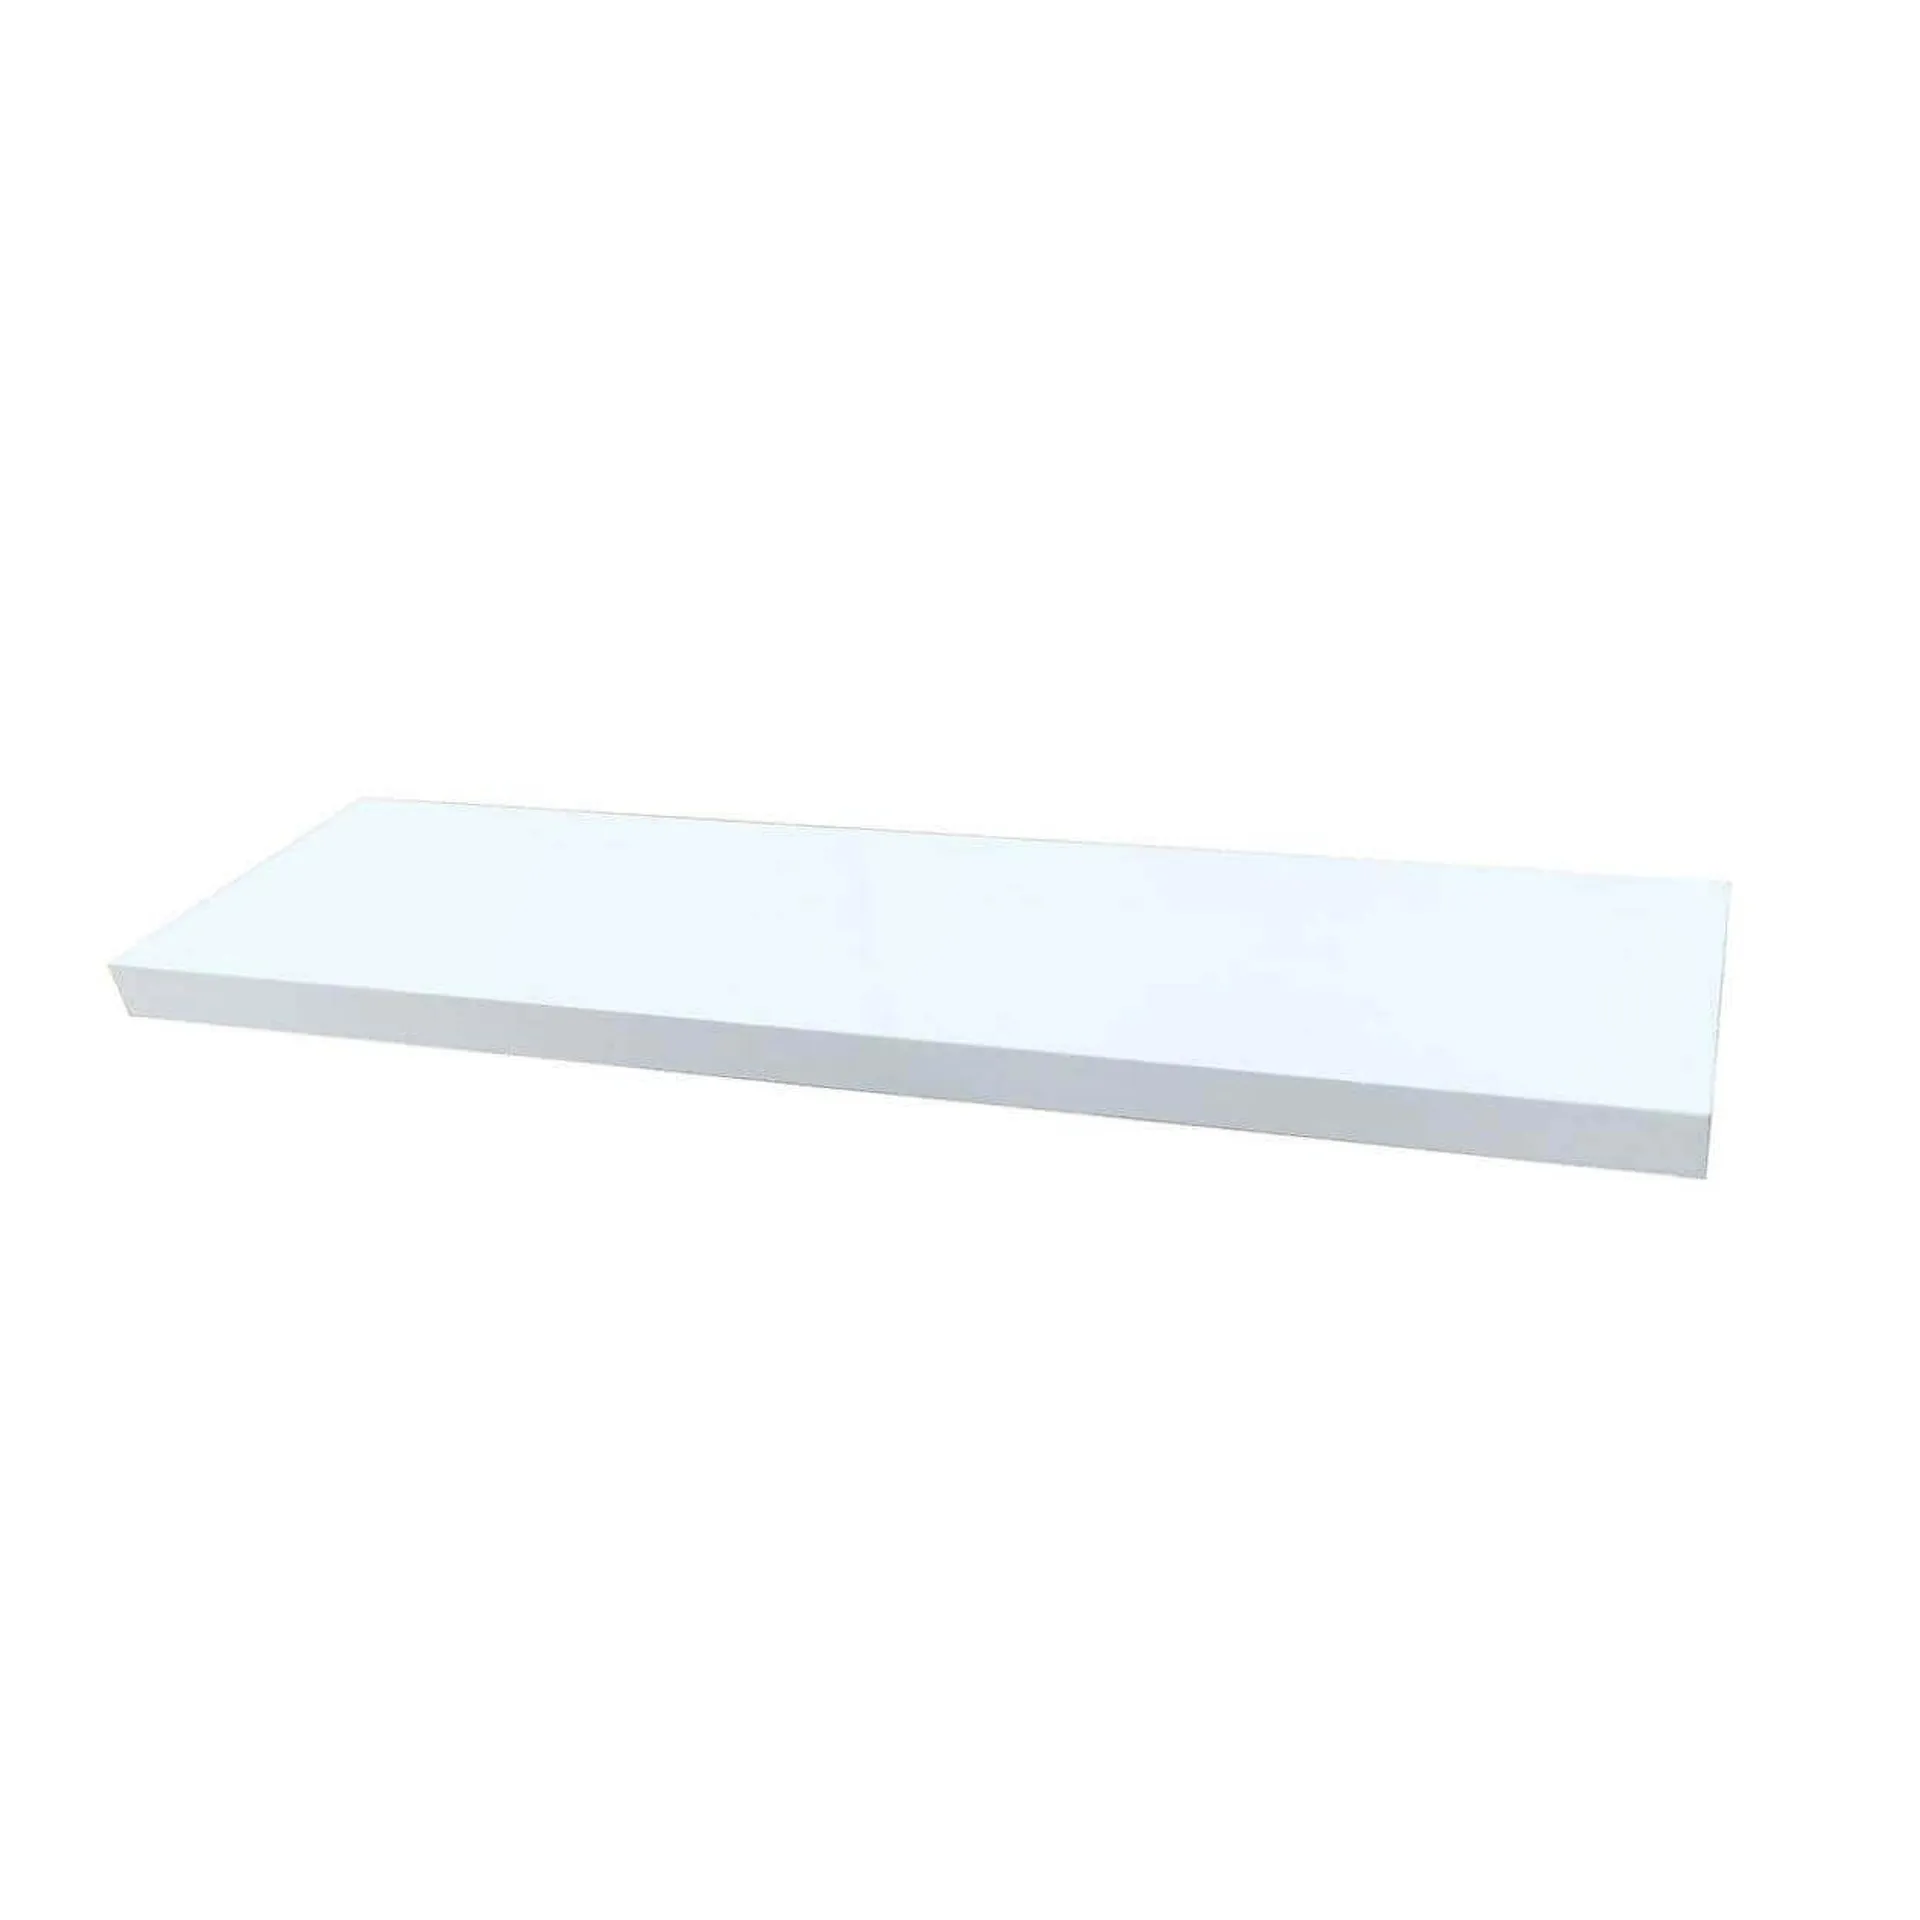 Wooden Floating Shelf 900mm White